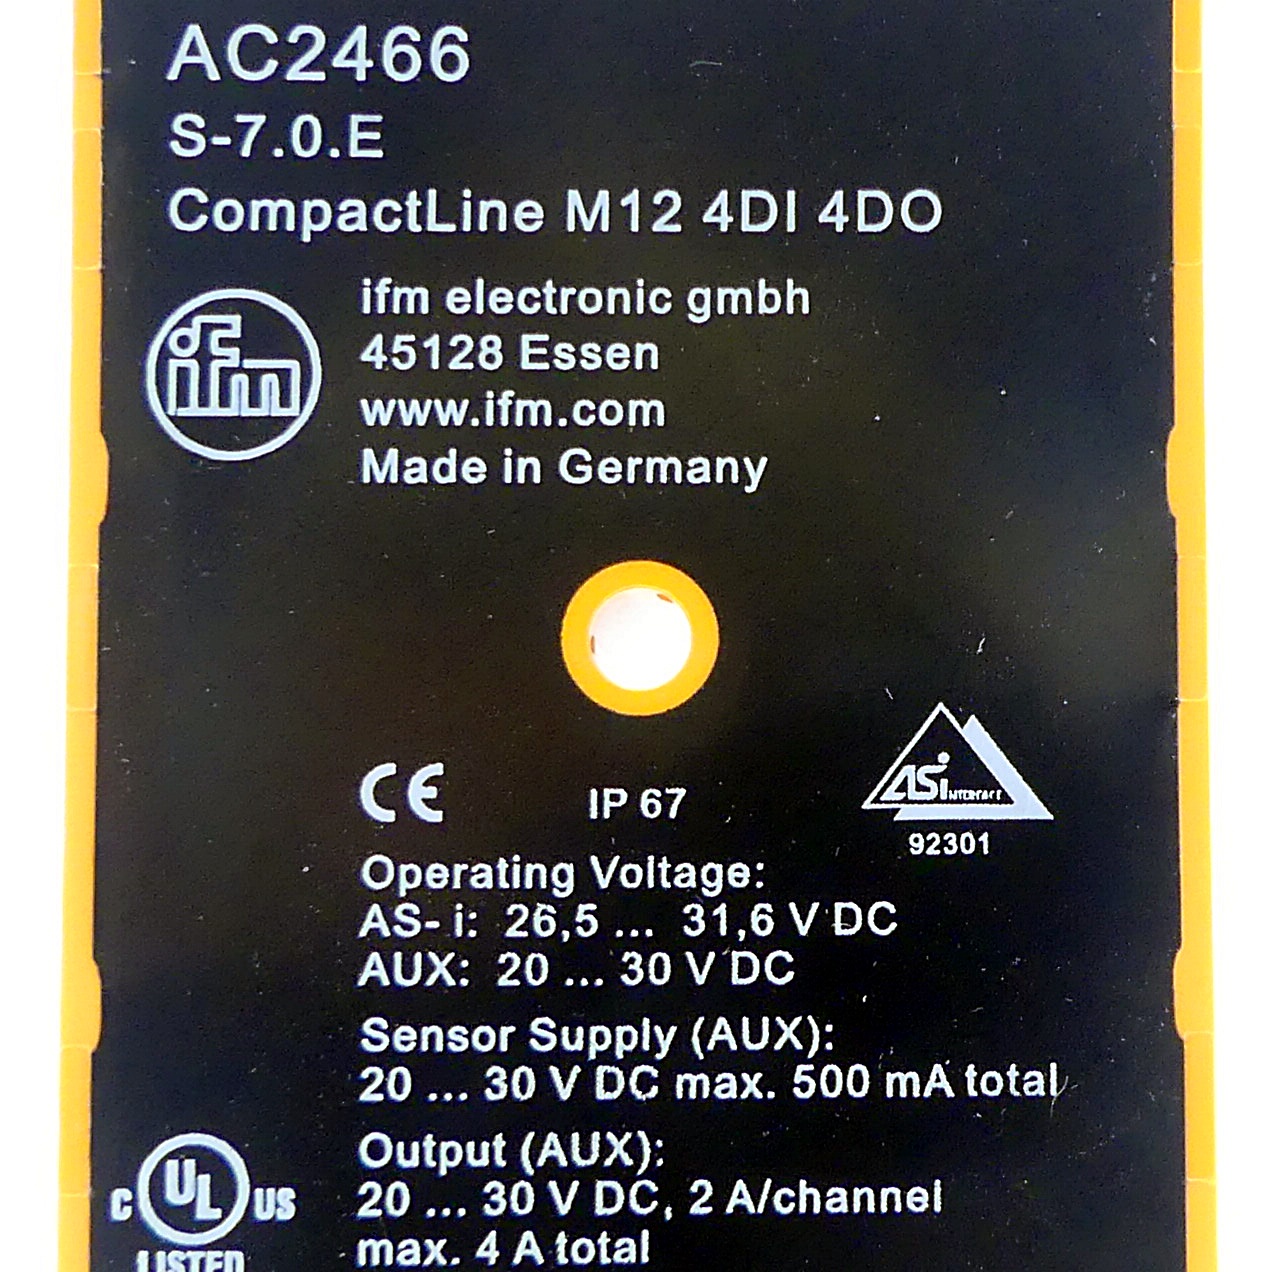 CompactLine-Modul AC2466 